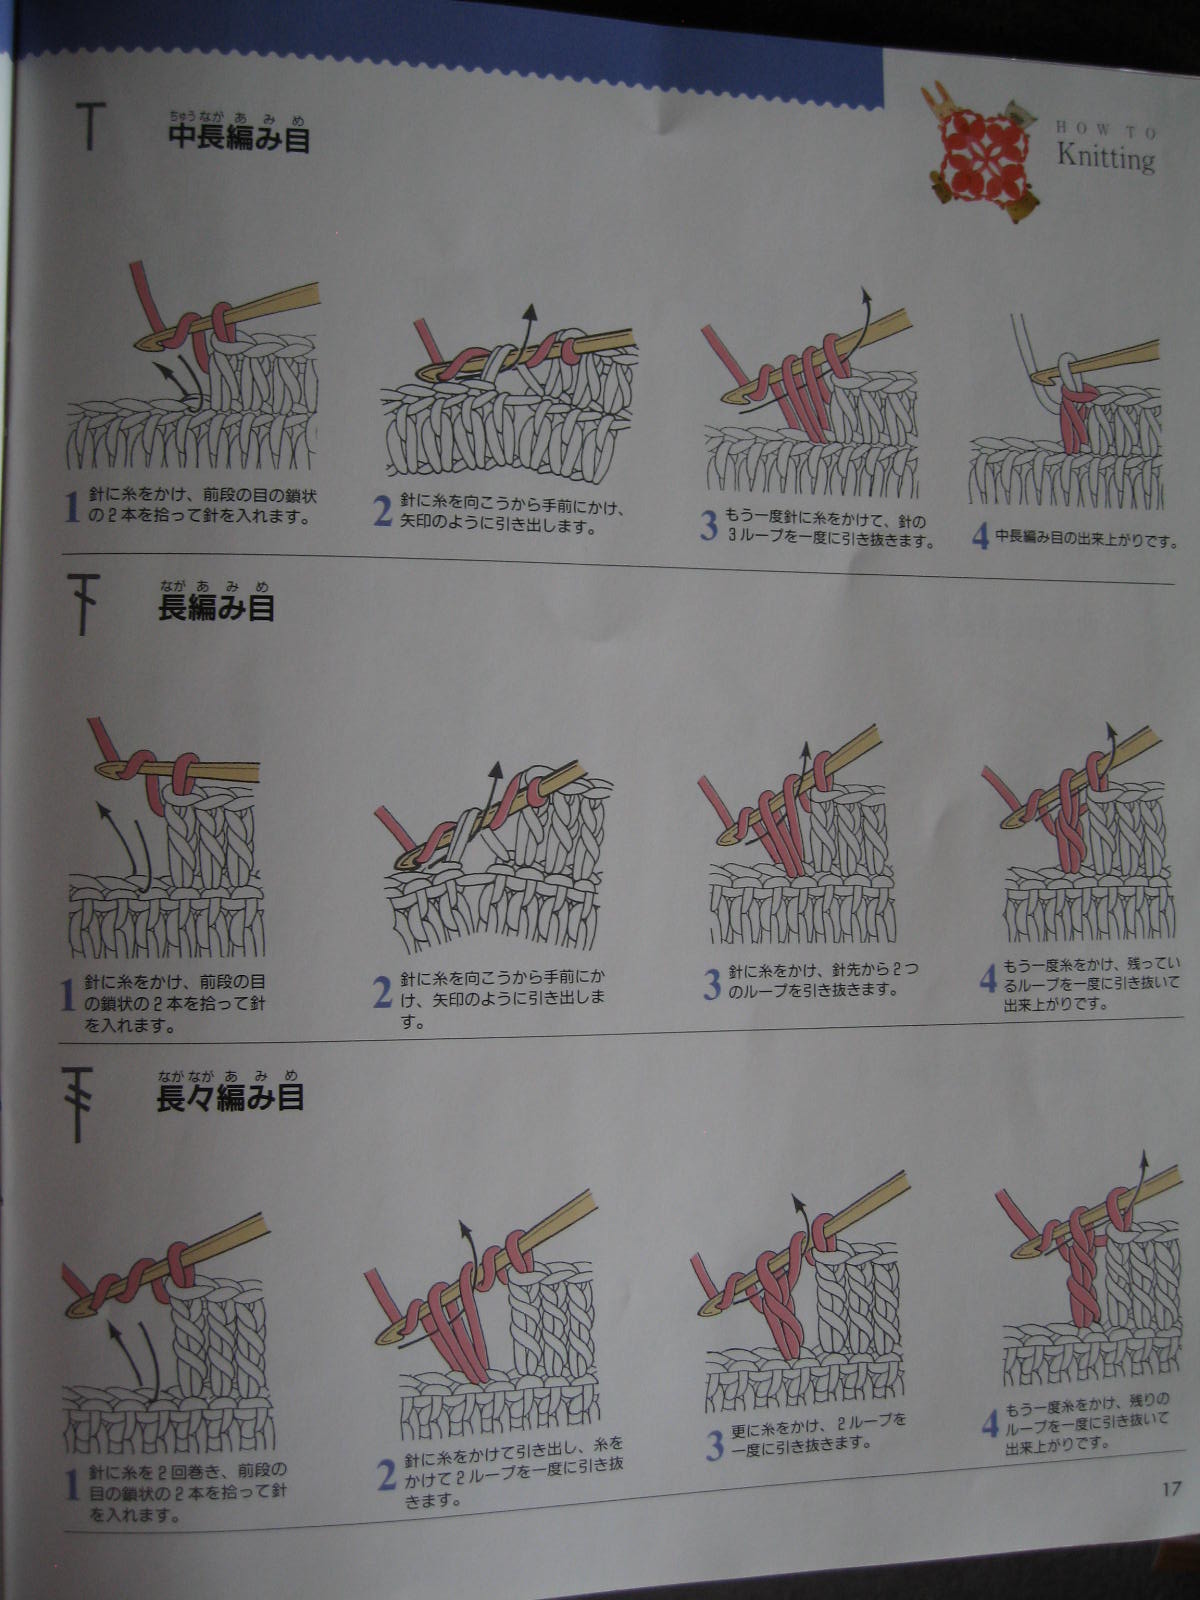 BLURT Blogger: Japanese Diagram Crochet Explained!